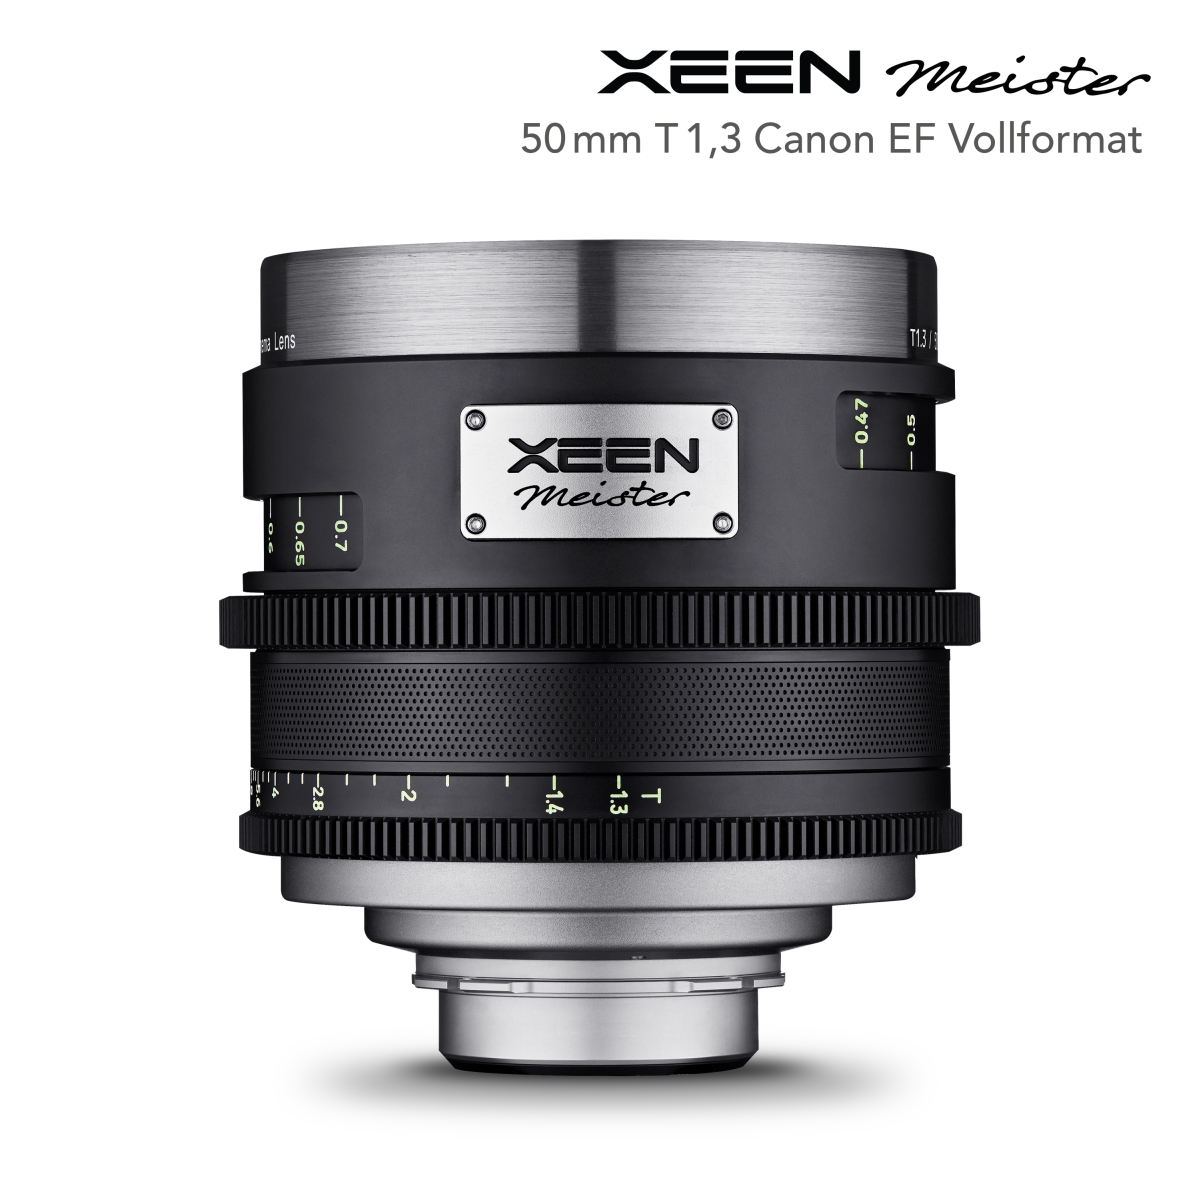 XEEN Meister 50mm T1.3 Canon EF Vollformat